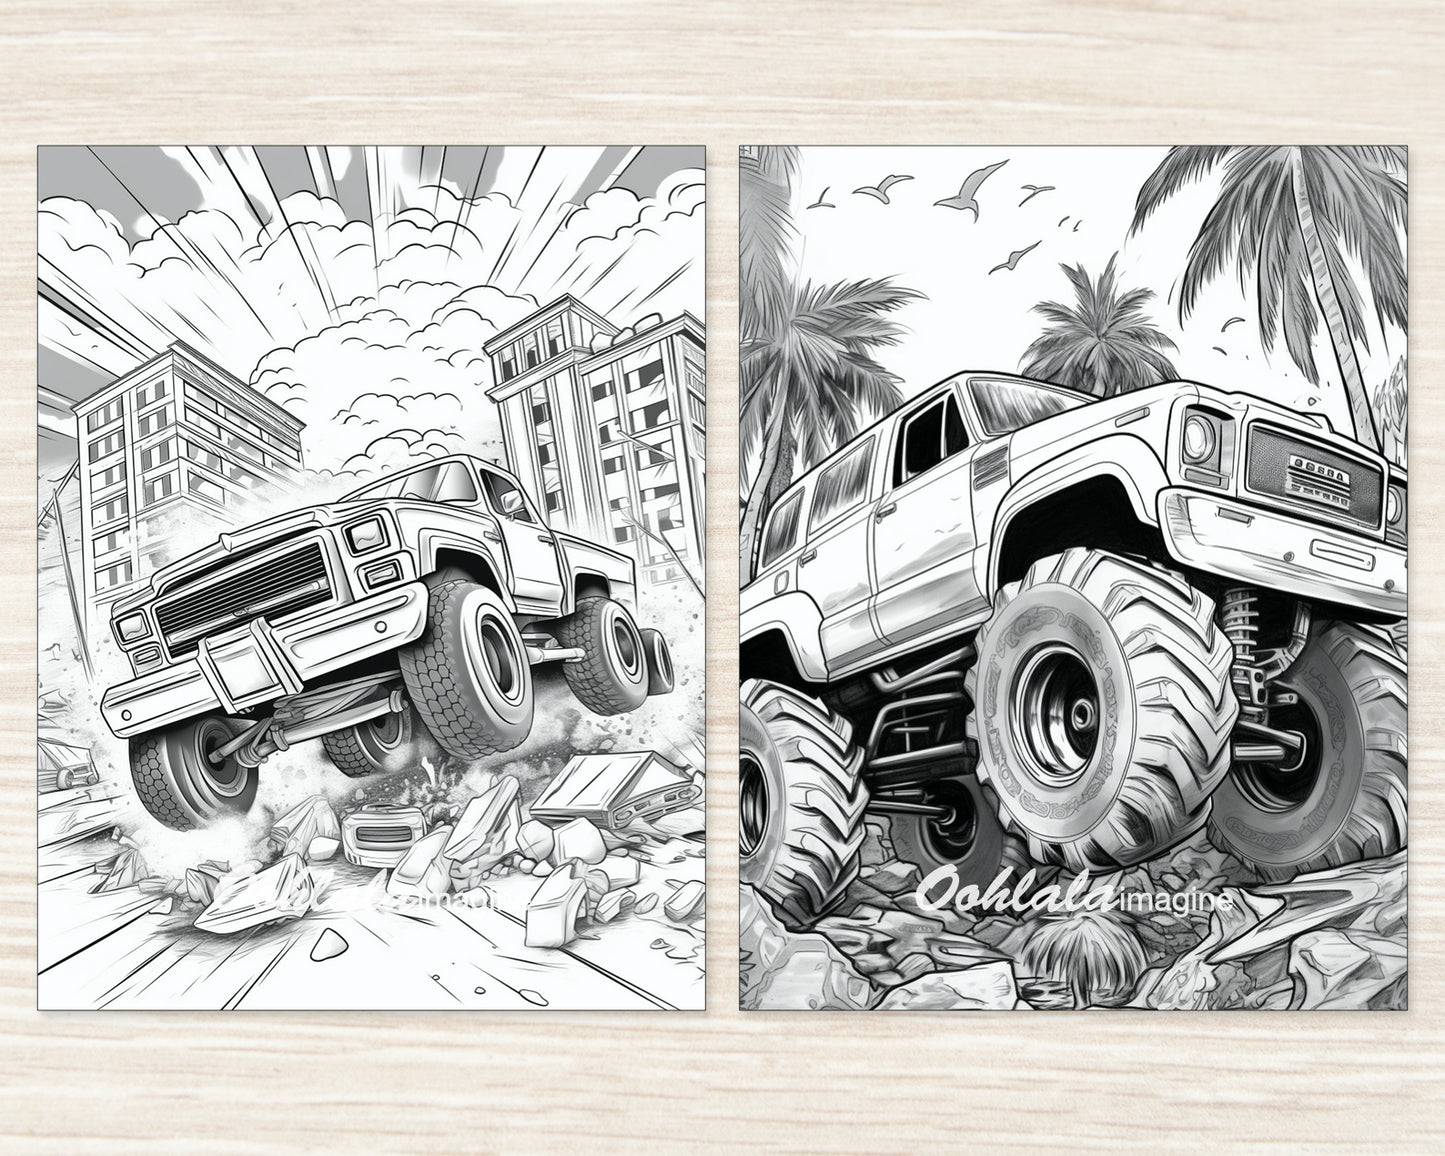 Monster Truck Coloring Digital Book - 30 Printable